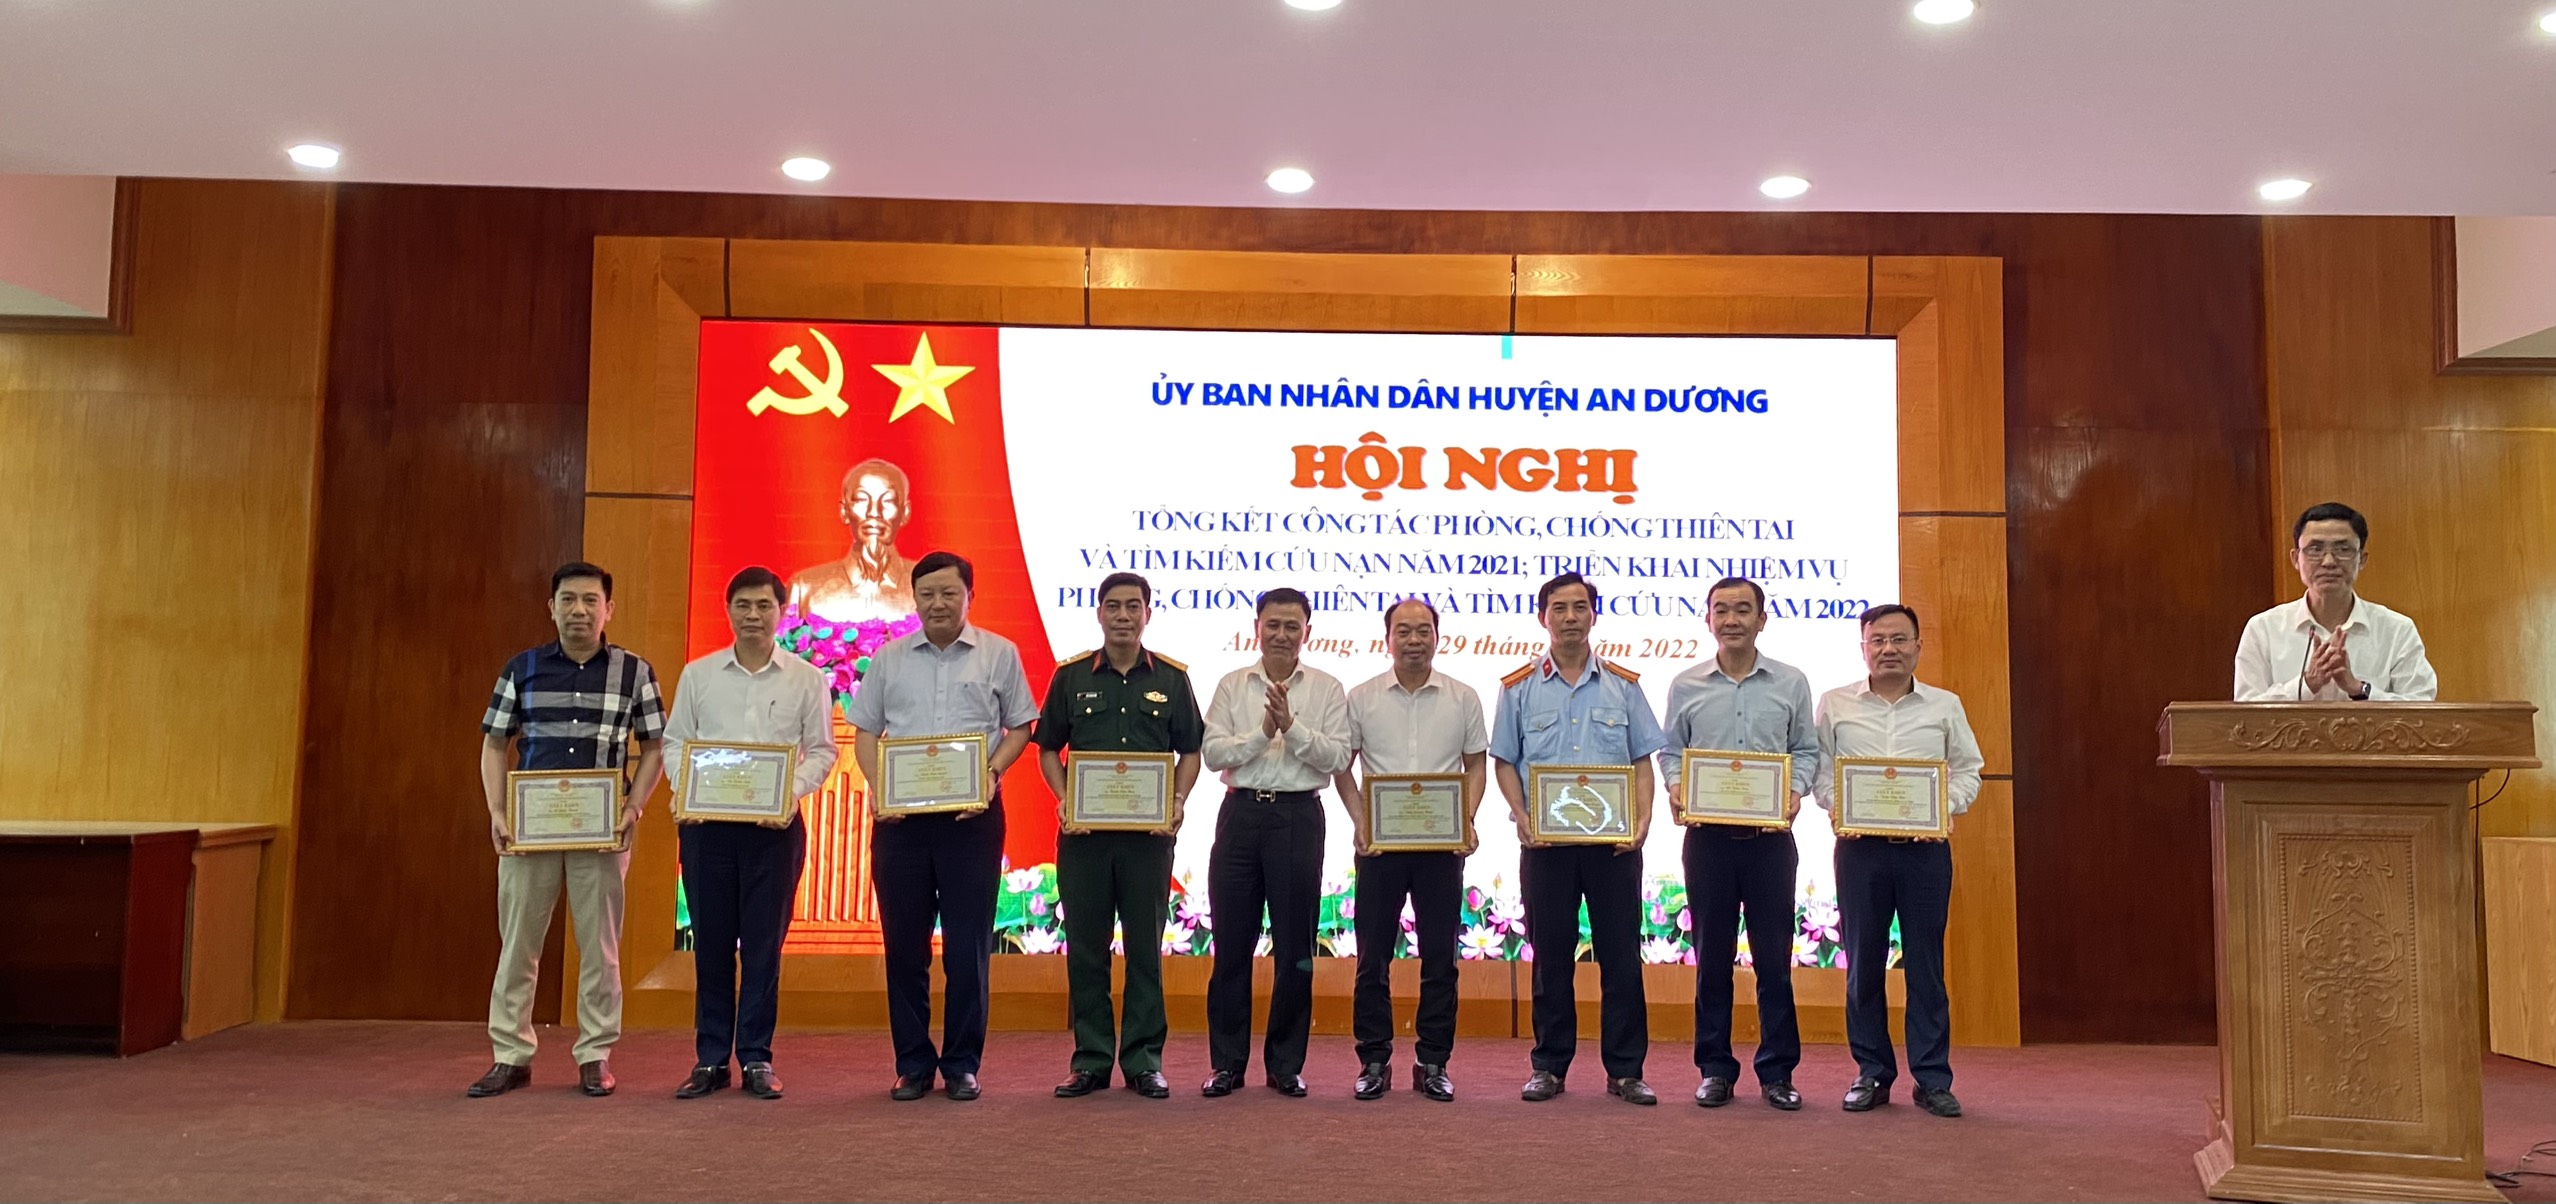 Lãnh đạo UBND huyện An Dương trao giấy khen tặng các tập thể, cá nhân có thành tích xuất sắc trong công tác PCTT-TKCN năm 2021.